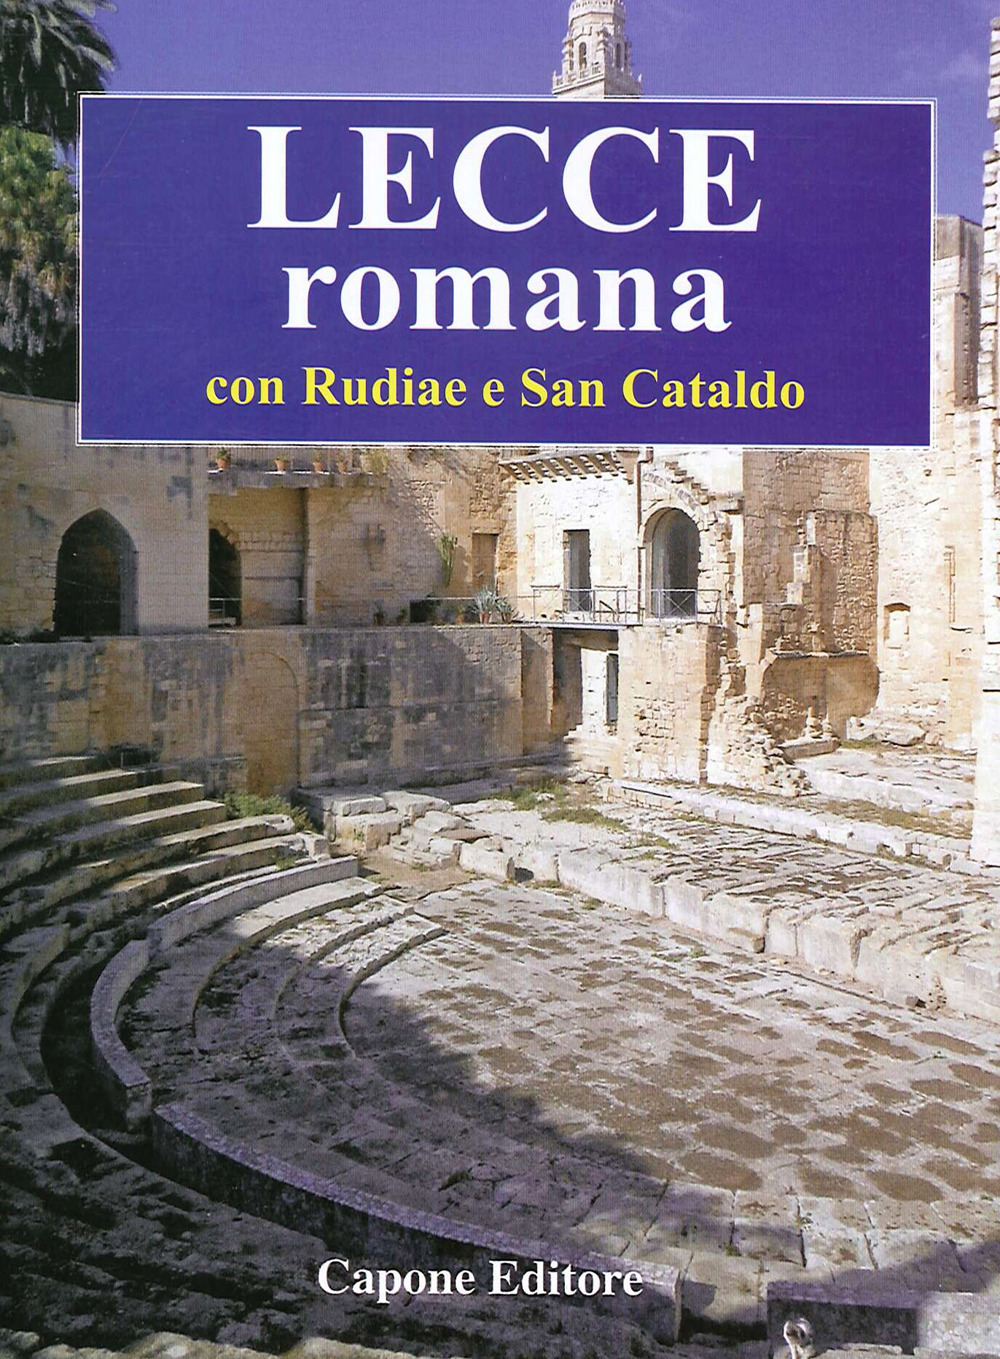 Lecce romana. Con Rudiae e San Cataldo